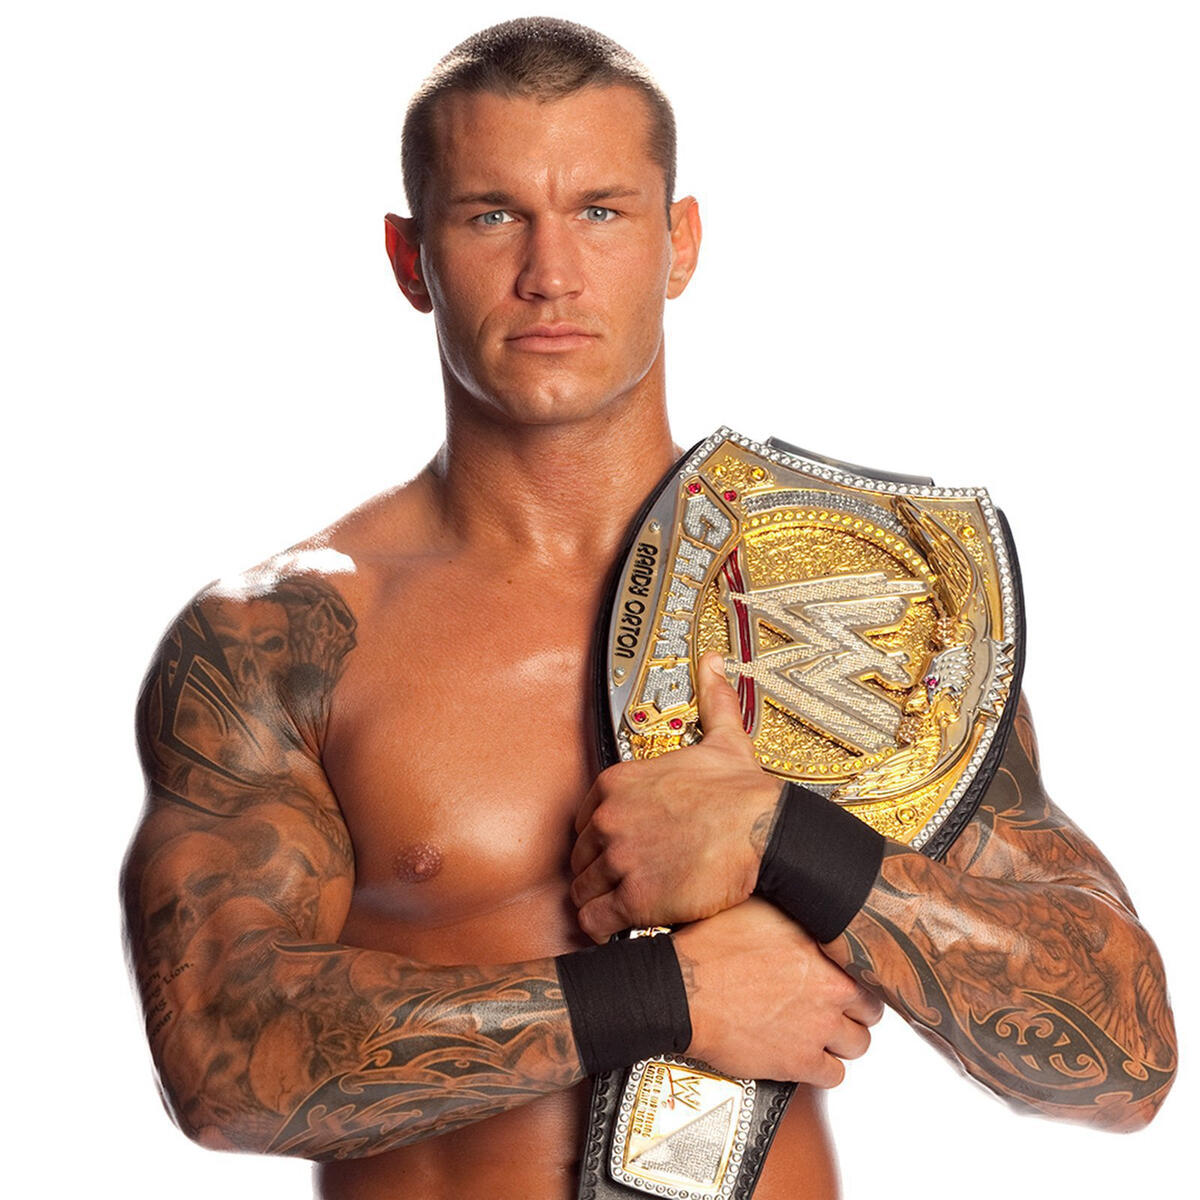 Randy Orton photo shoot outtakes: photos